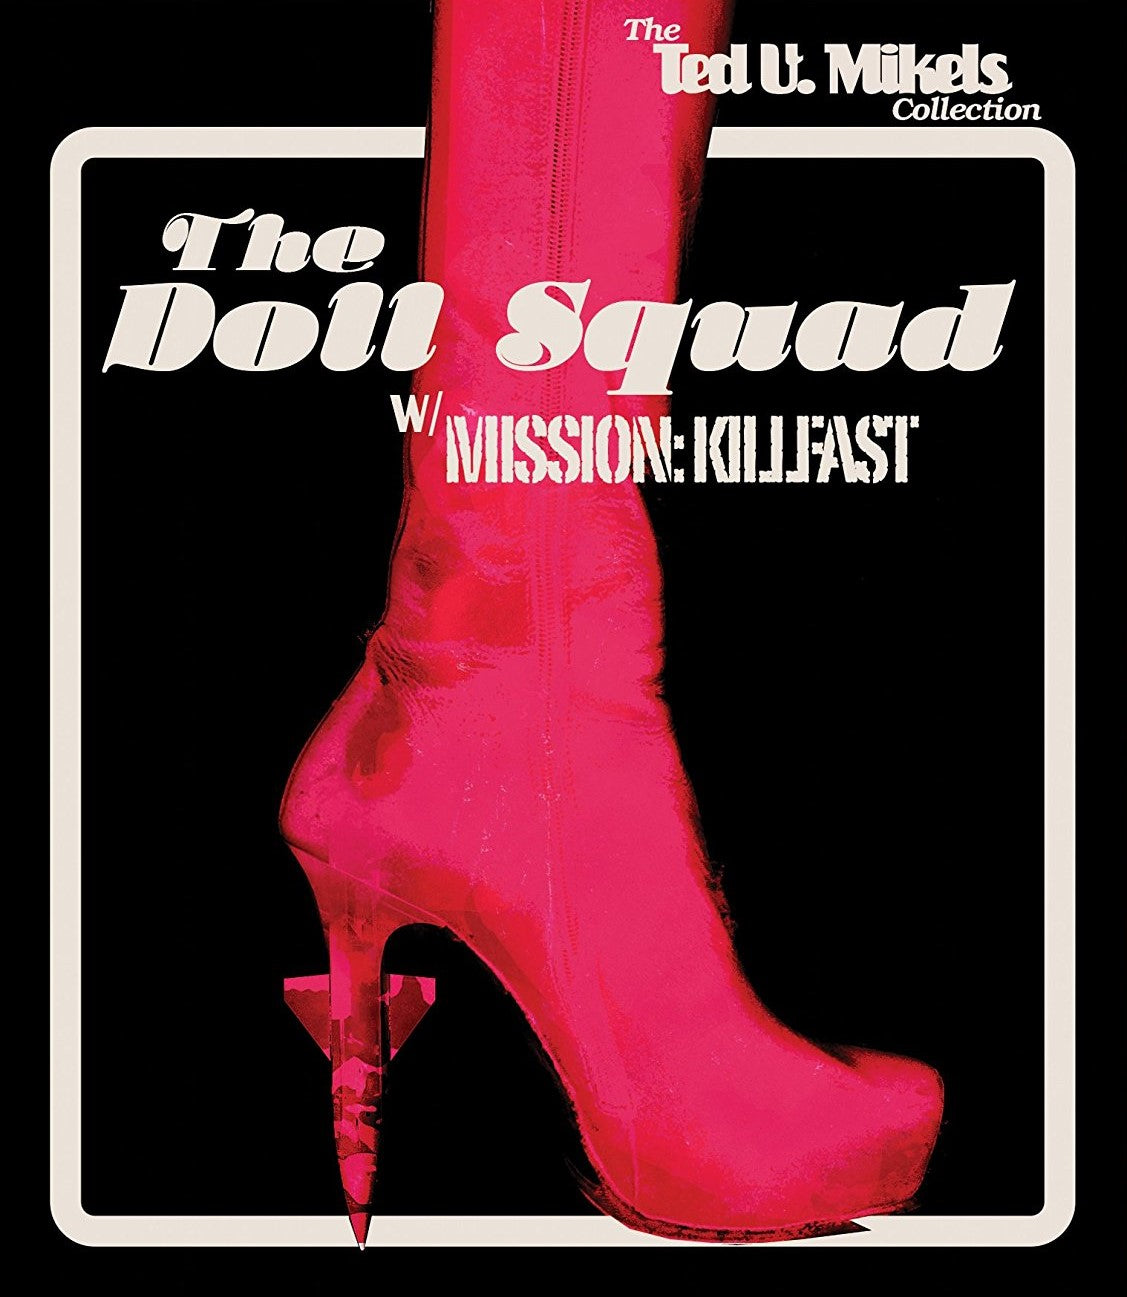 The Doll Squad / Mission Killfast Blu-Ray Blu-Ray